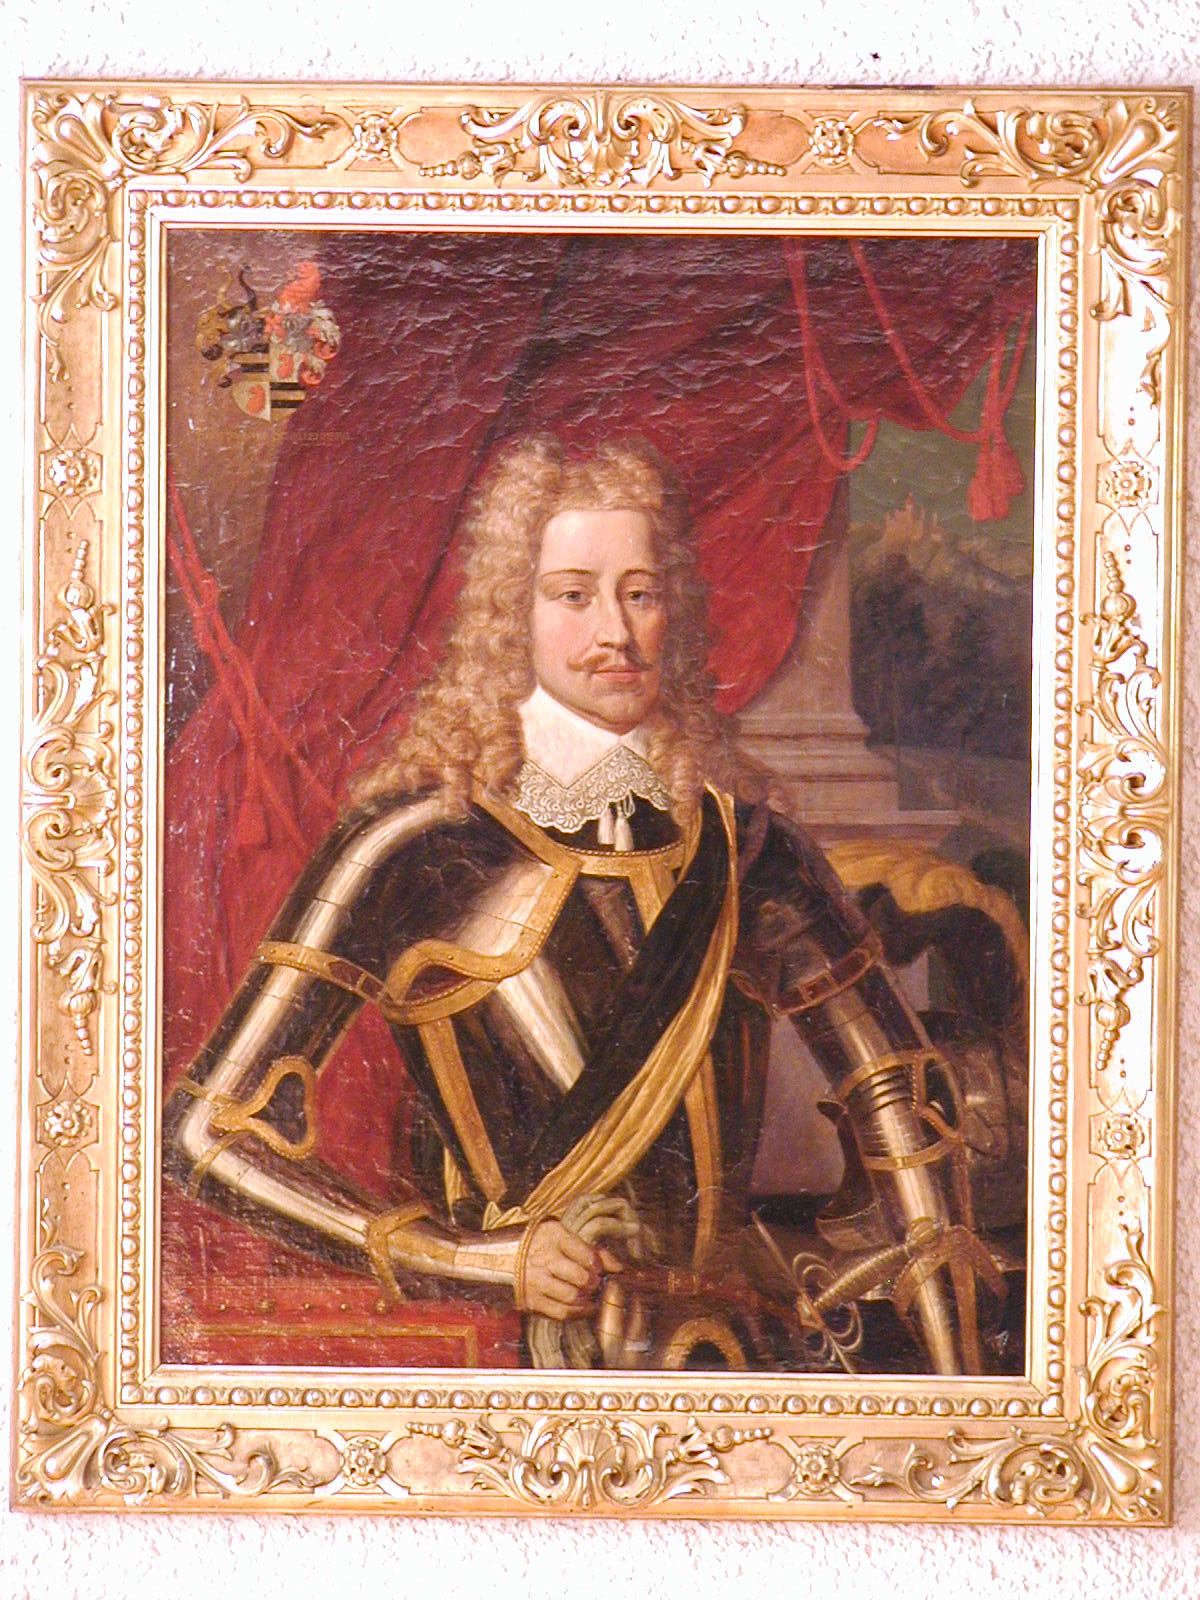 Freiherr von Schellenberg